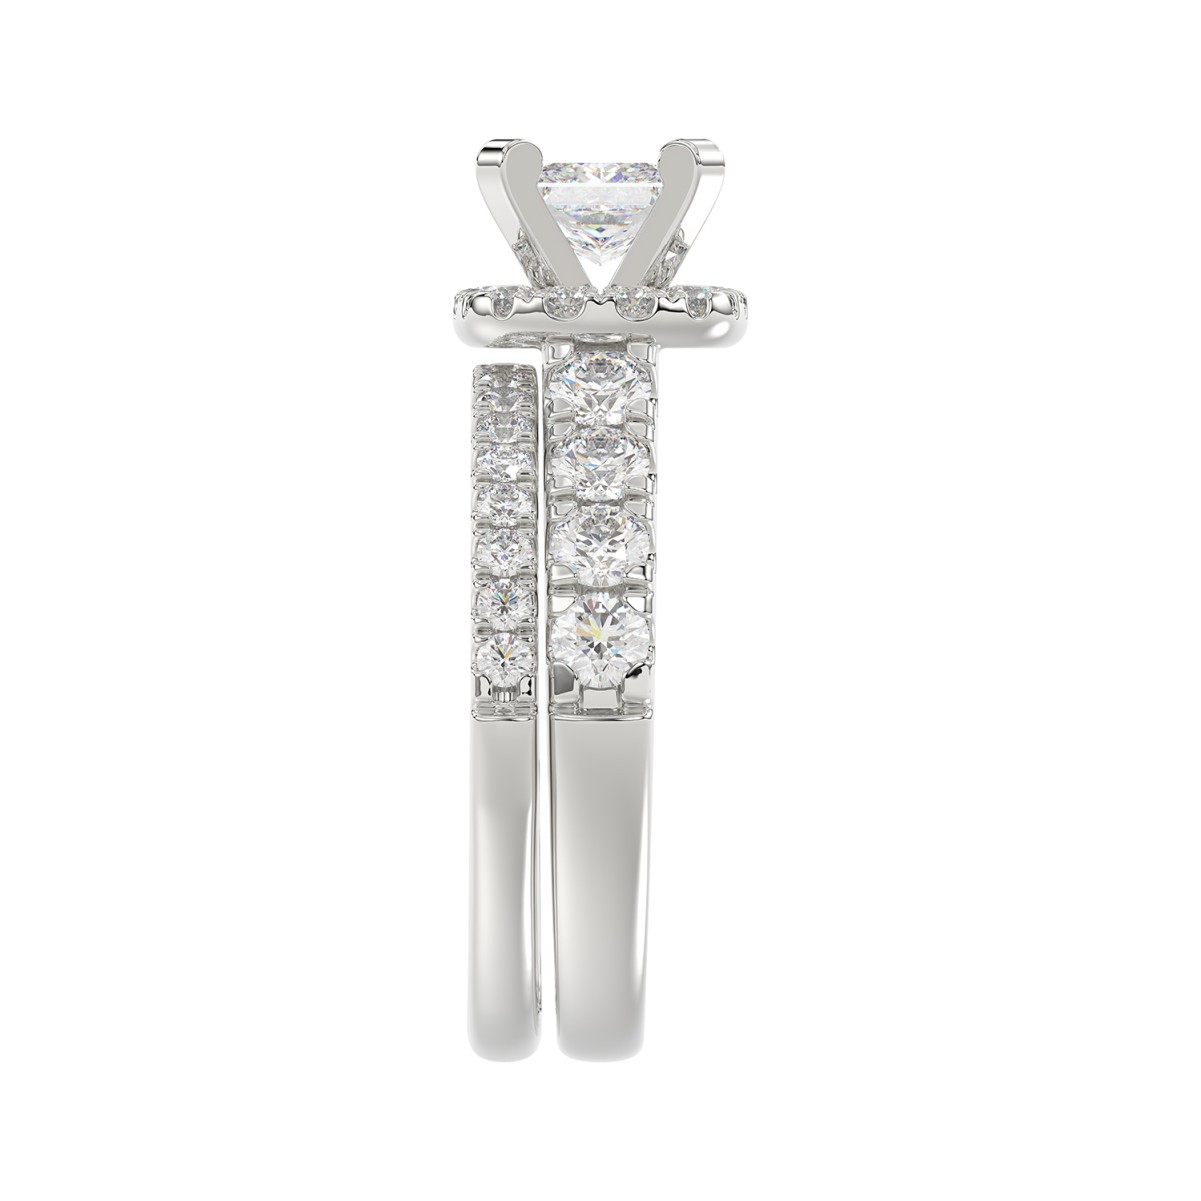 14K WHITE GOLD 2 1/4CT ROUND/PRINCESS DIAMOND LADIES BRIDAL SET(CENTER STONE PRINCESS DIAMOND 3/4CT)